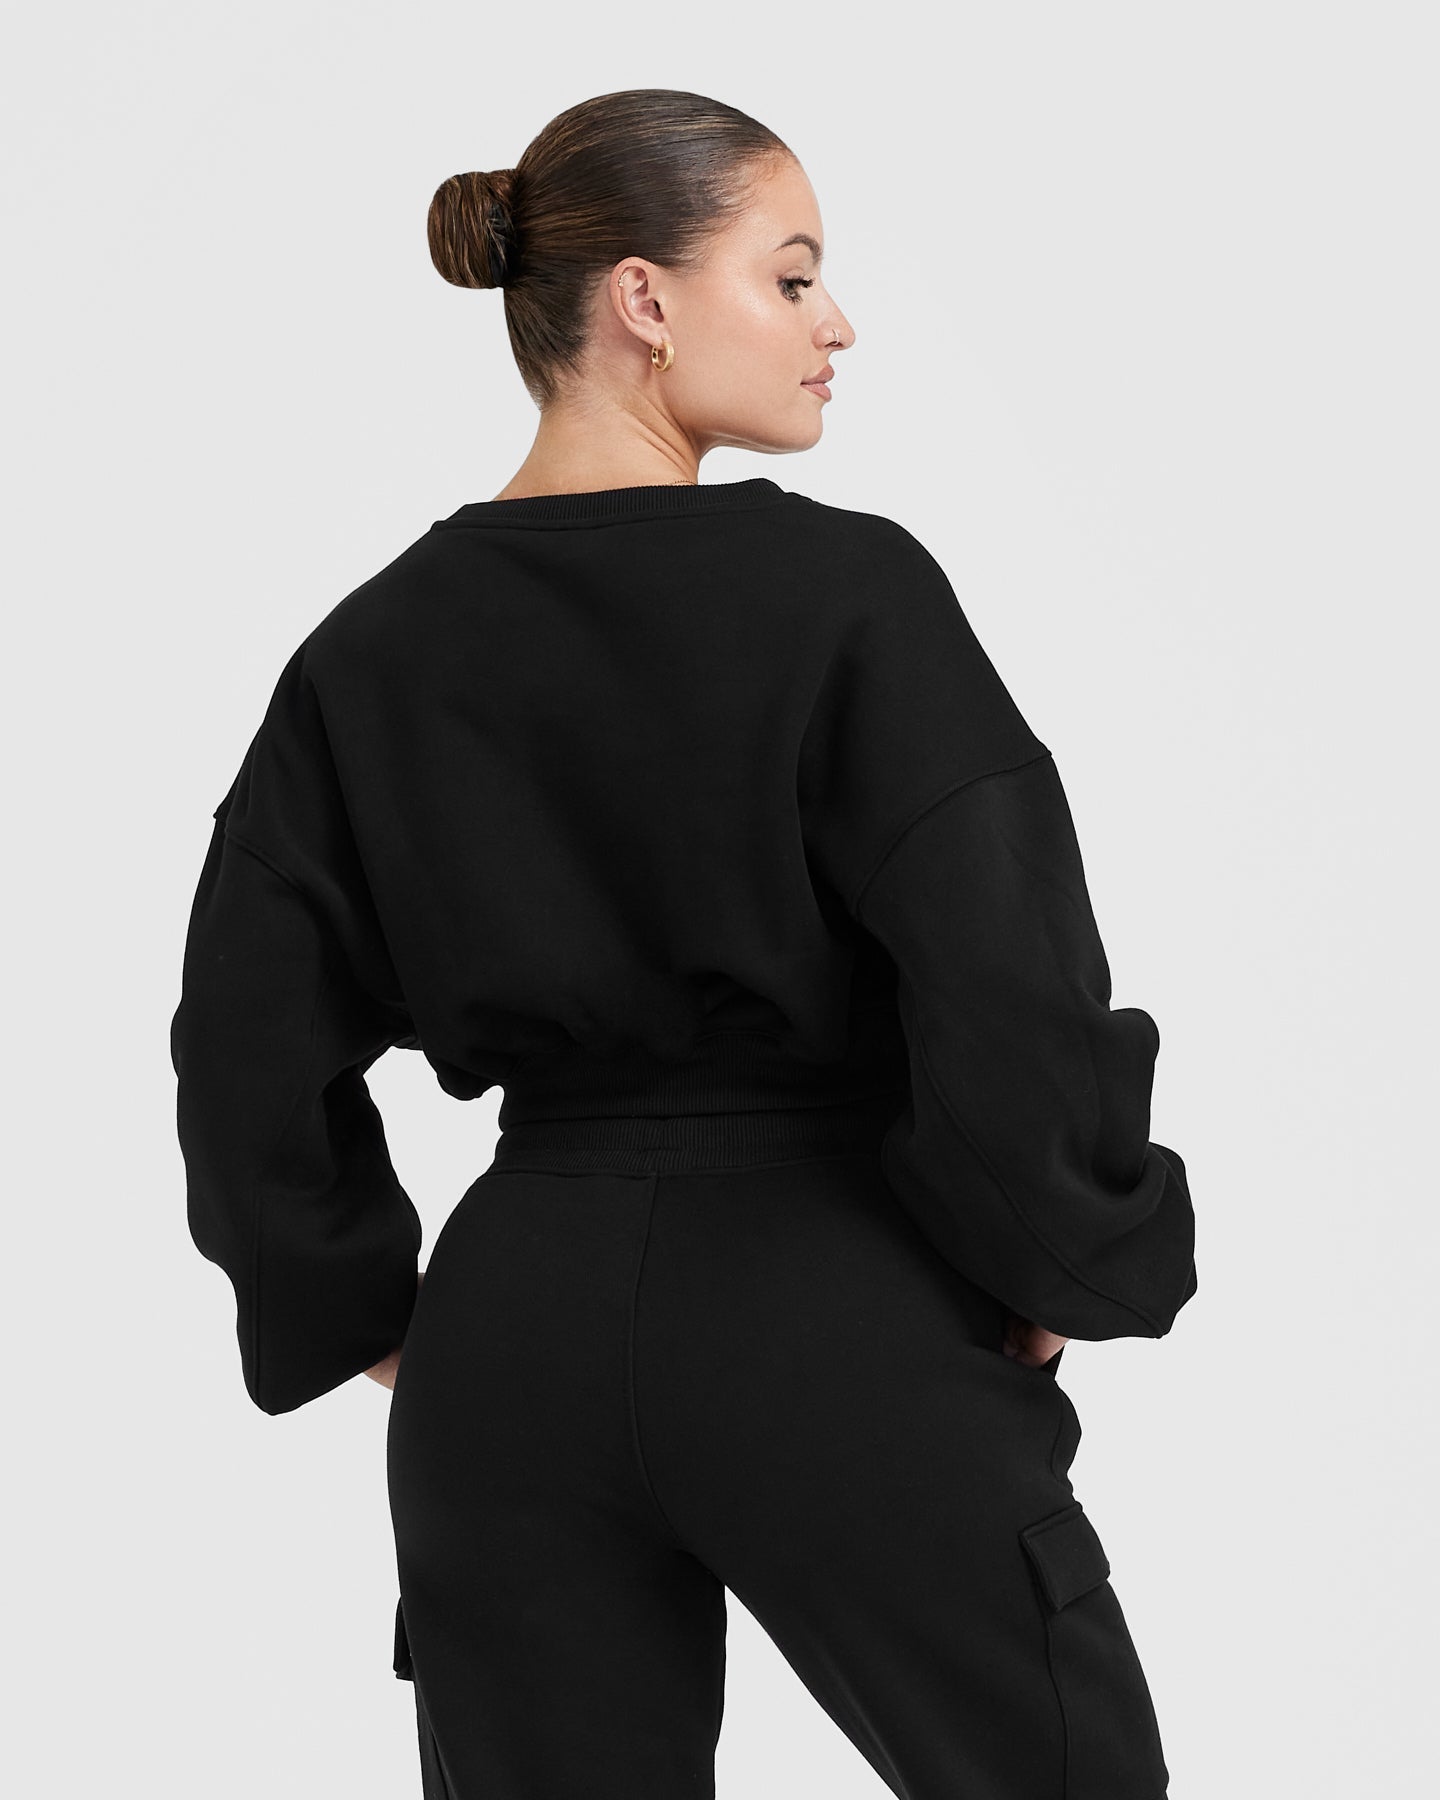 Black Crop Sweatshirt - V-Neck | Oner Active US